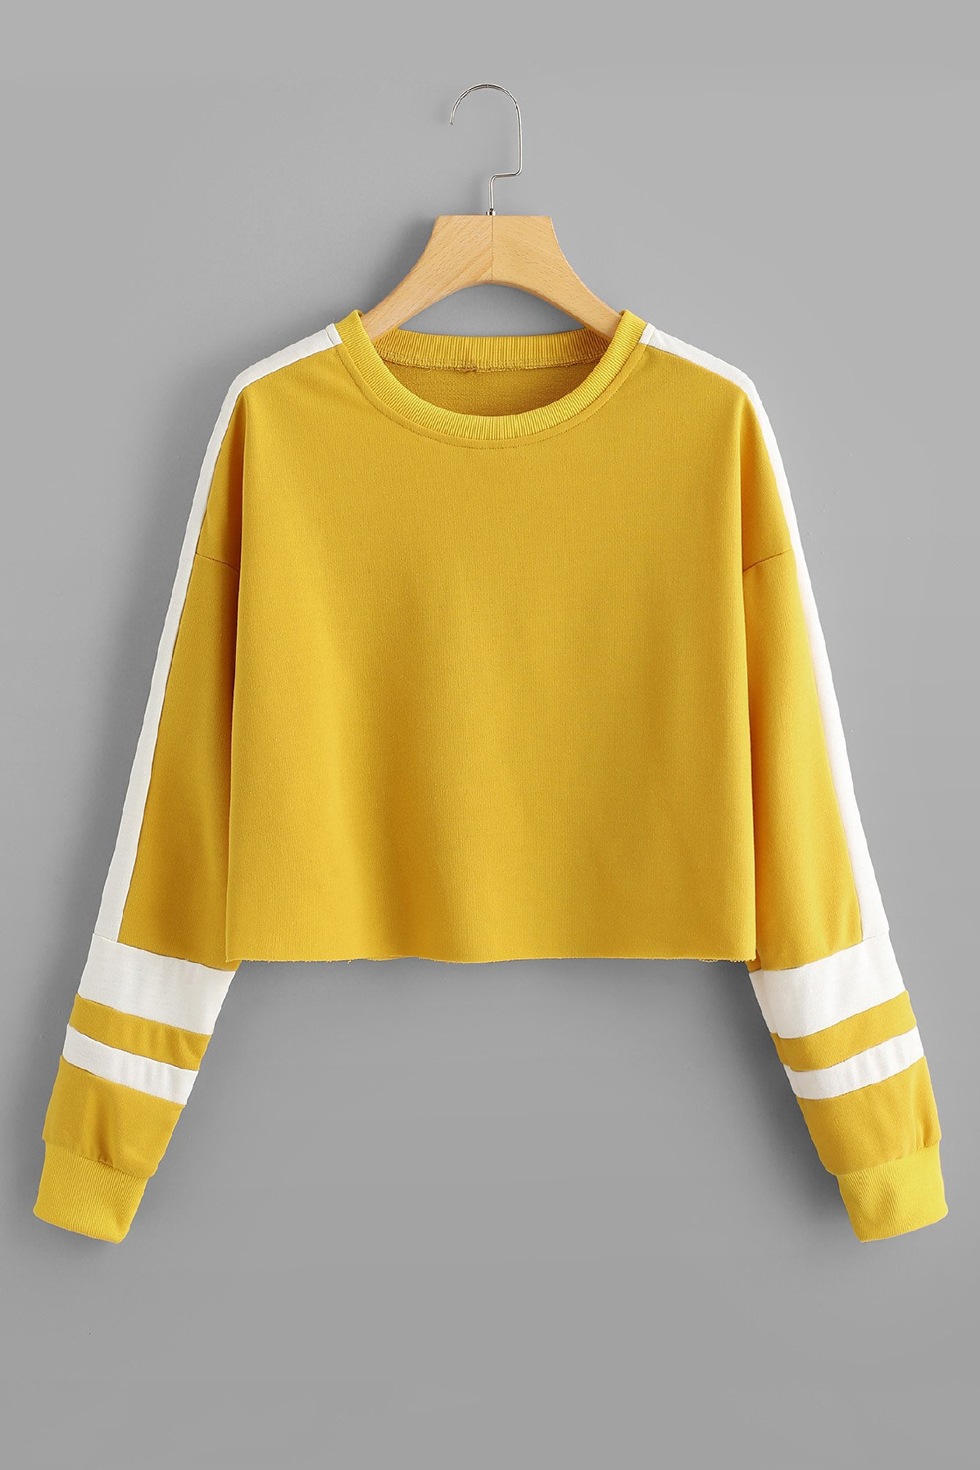 yellow sweatshirt crop top